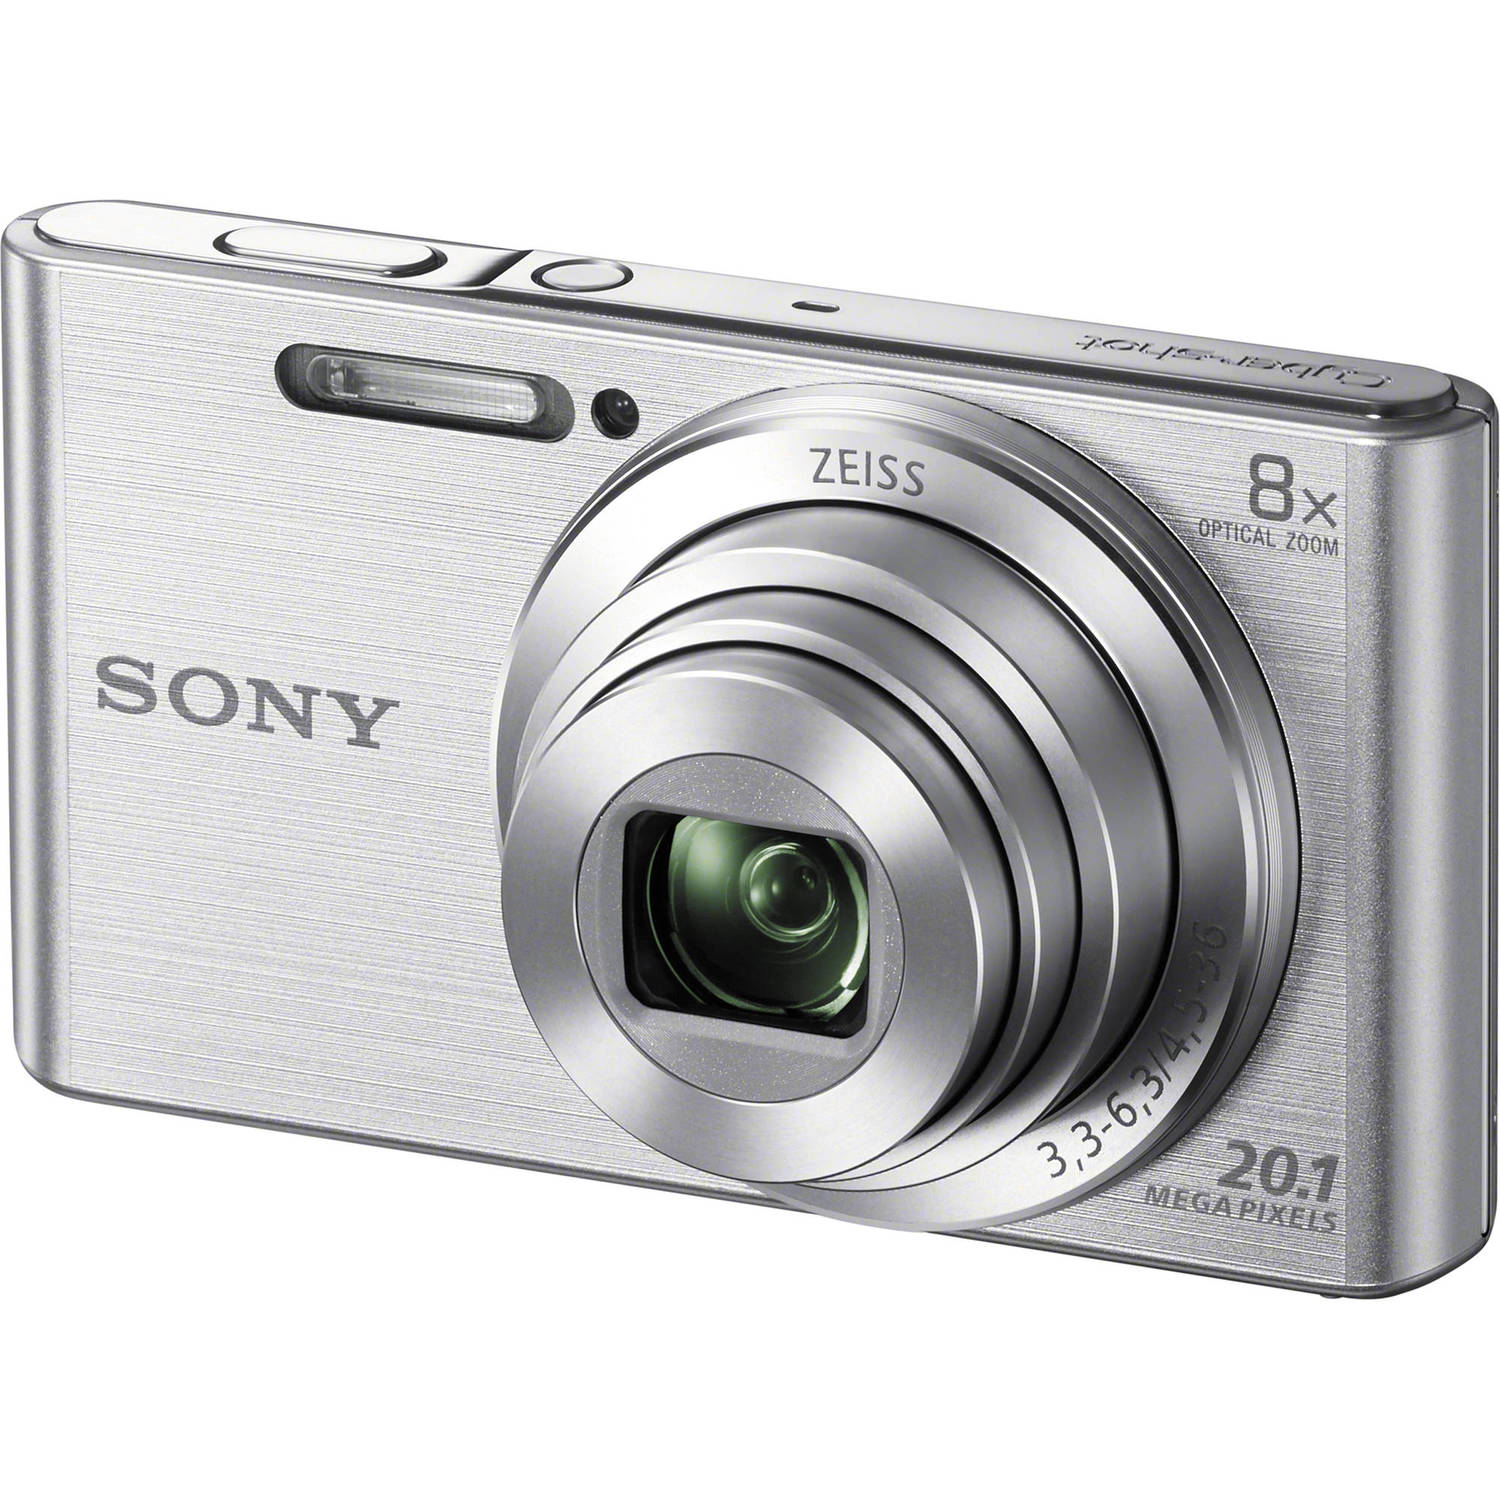 Sony Cyber-shot DSC-W830 Digital